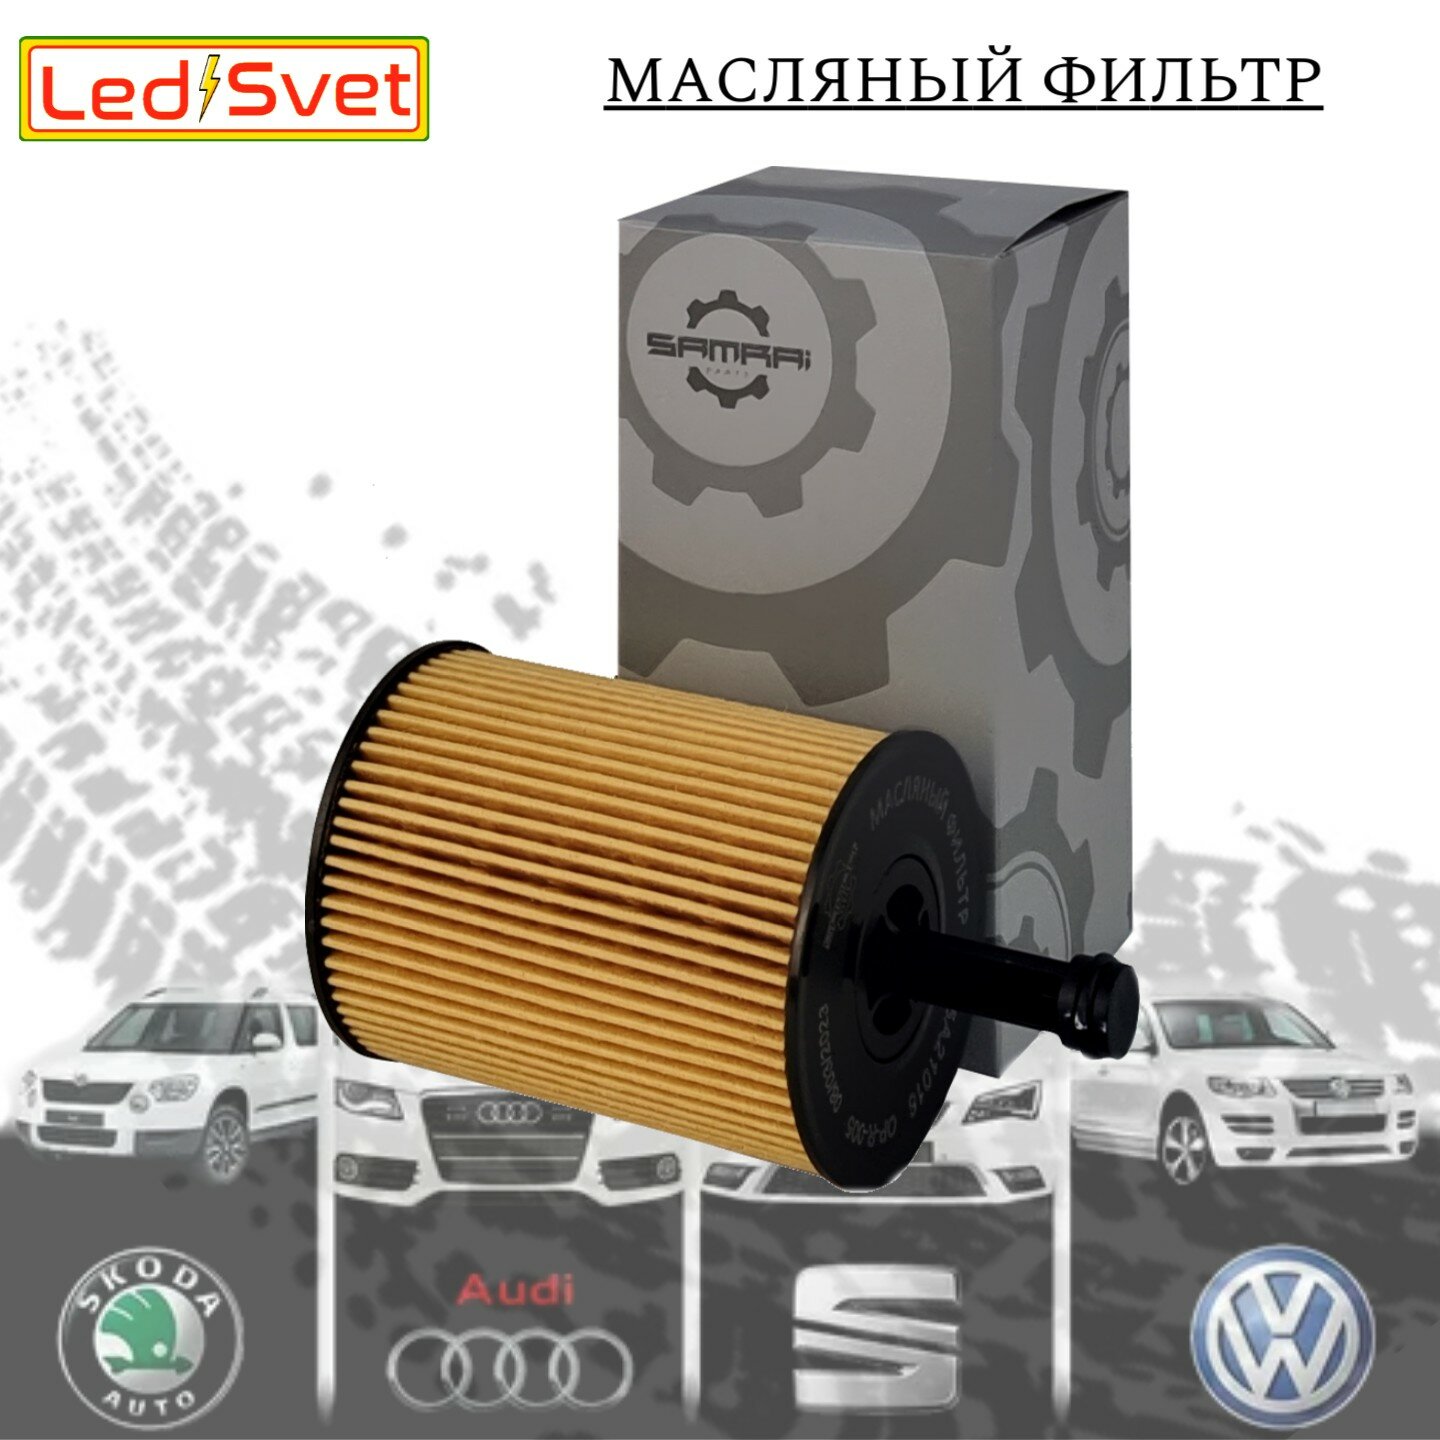 Масляный фильтр Samrai Parts для Audi Volkswagen Skoda VG5A21016 071 115 562 C HU 719/7 x 61012A5